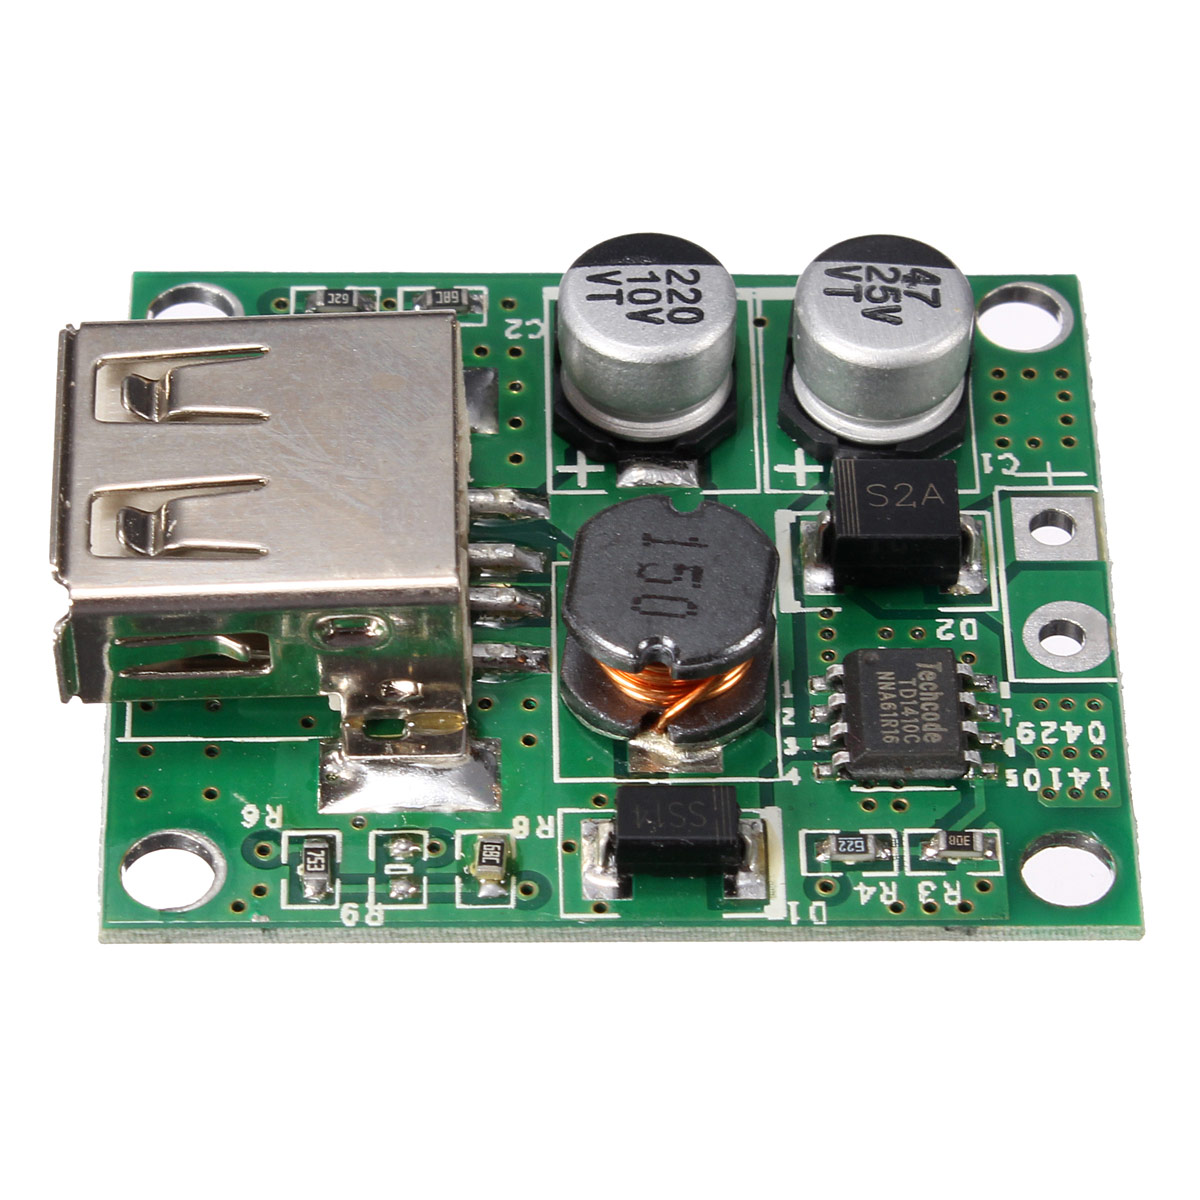 30pcs-5V-2A-Solar-Panel-Power-Bank-USB-Charge-Voltage-Controller-Regulator-Module-6V-20V-Input-For-U-1369819